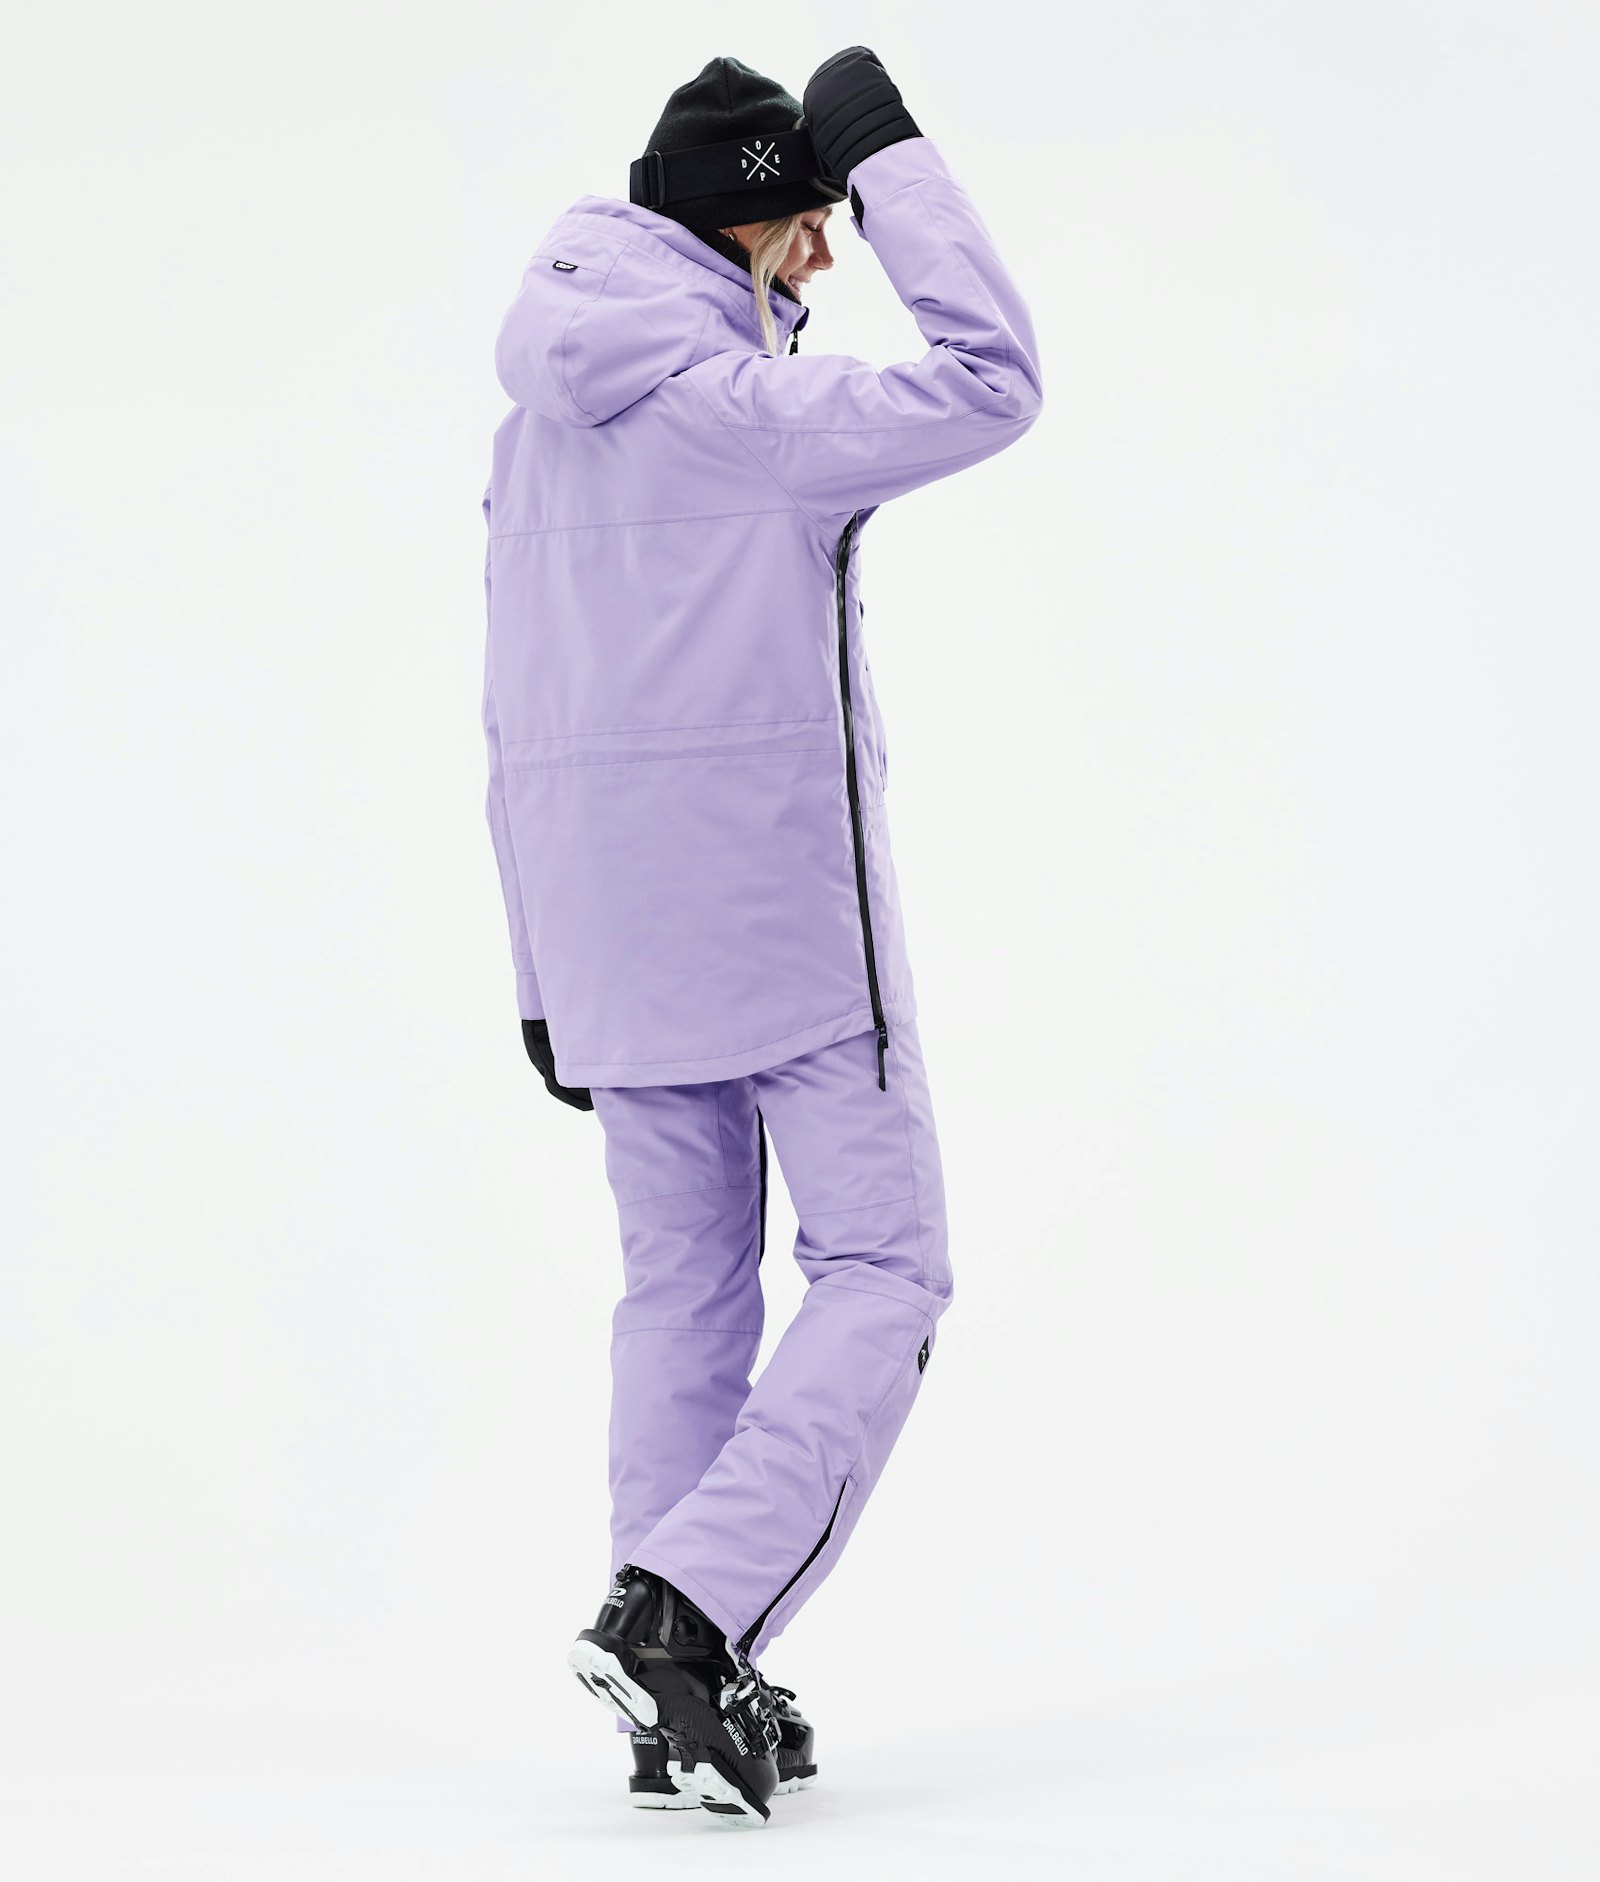 Akin W 2021 Manteau Ski Femme Faded Violet